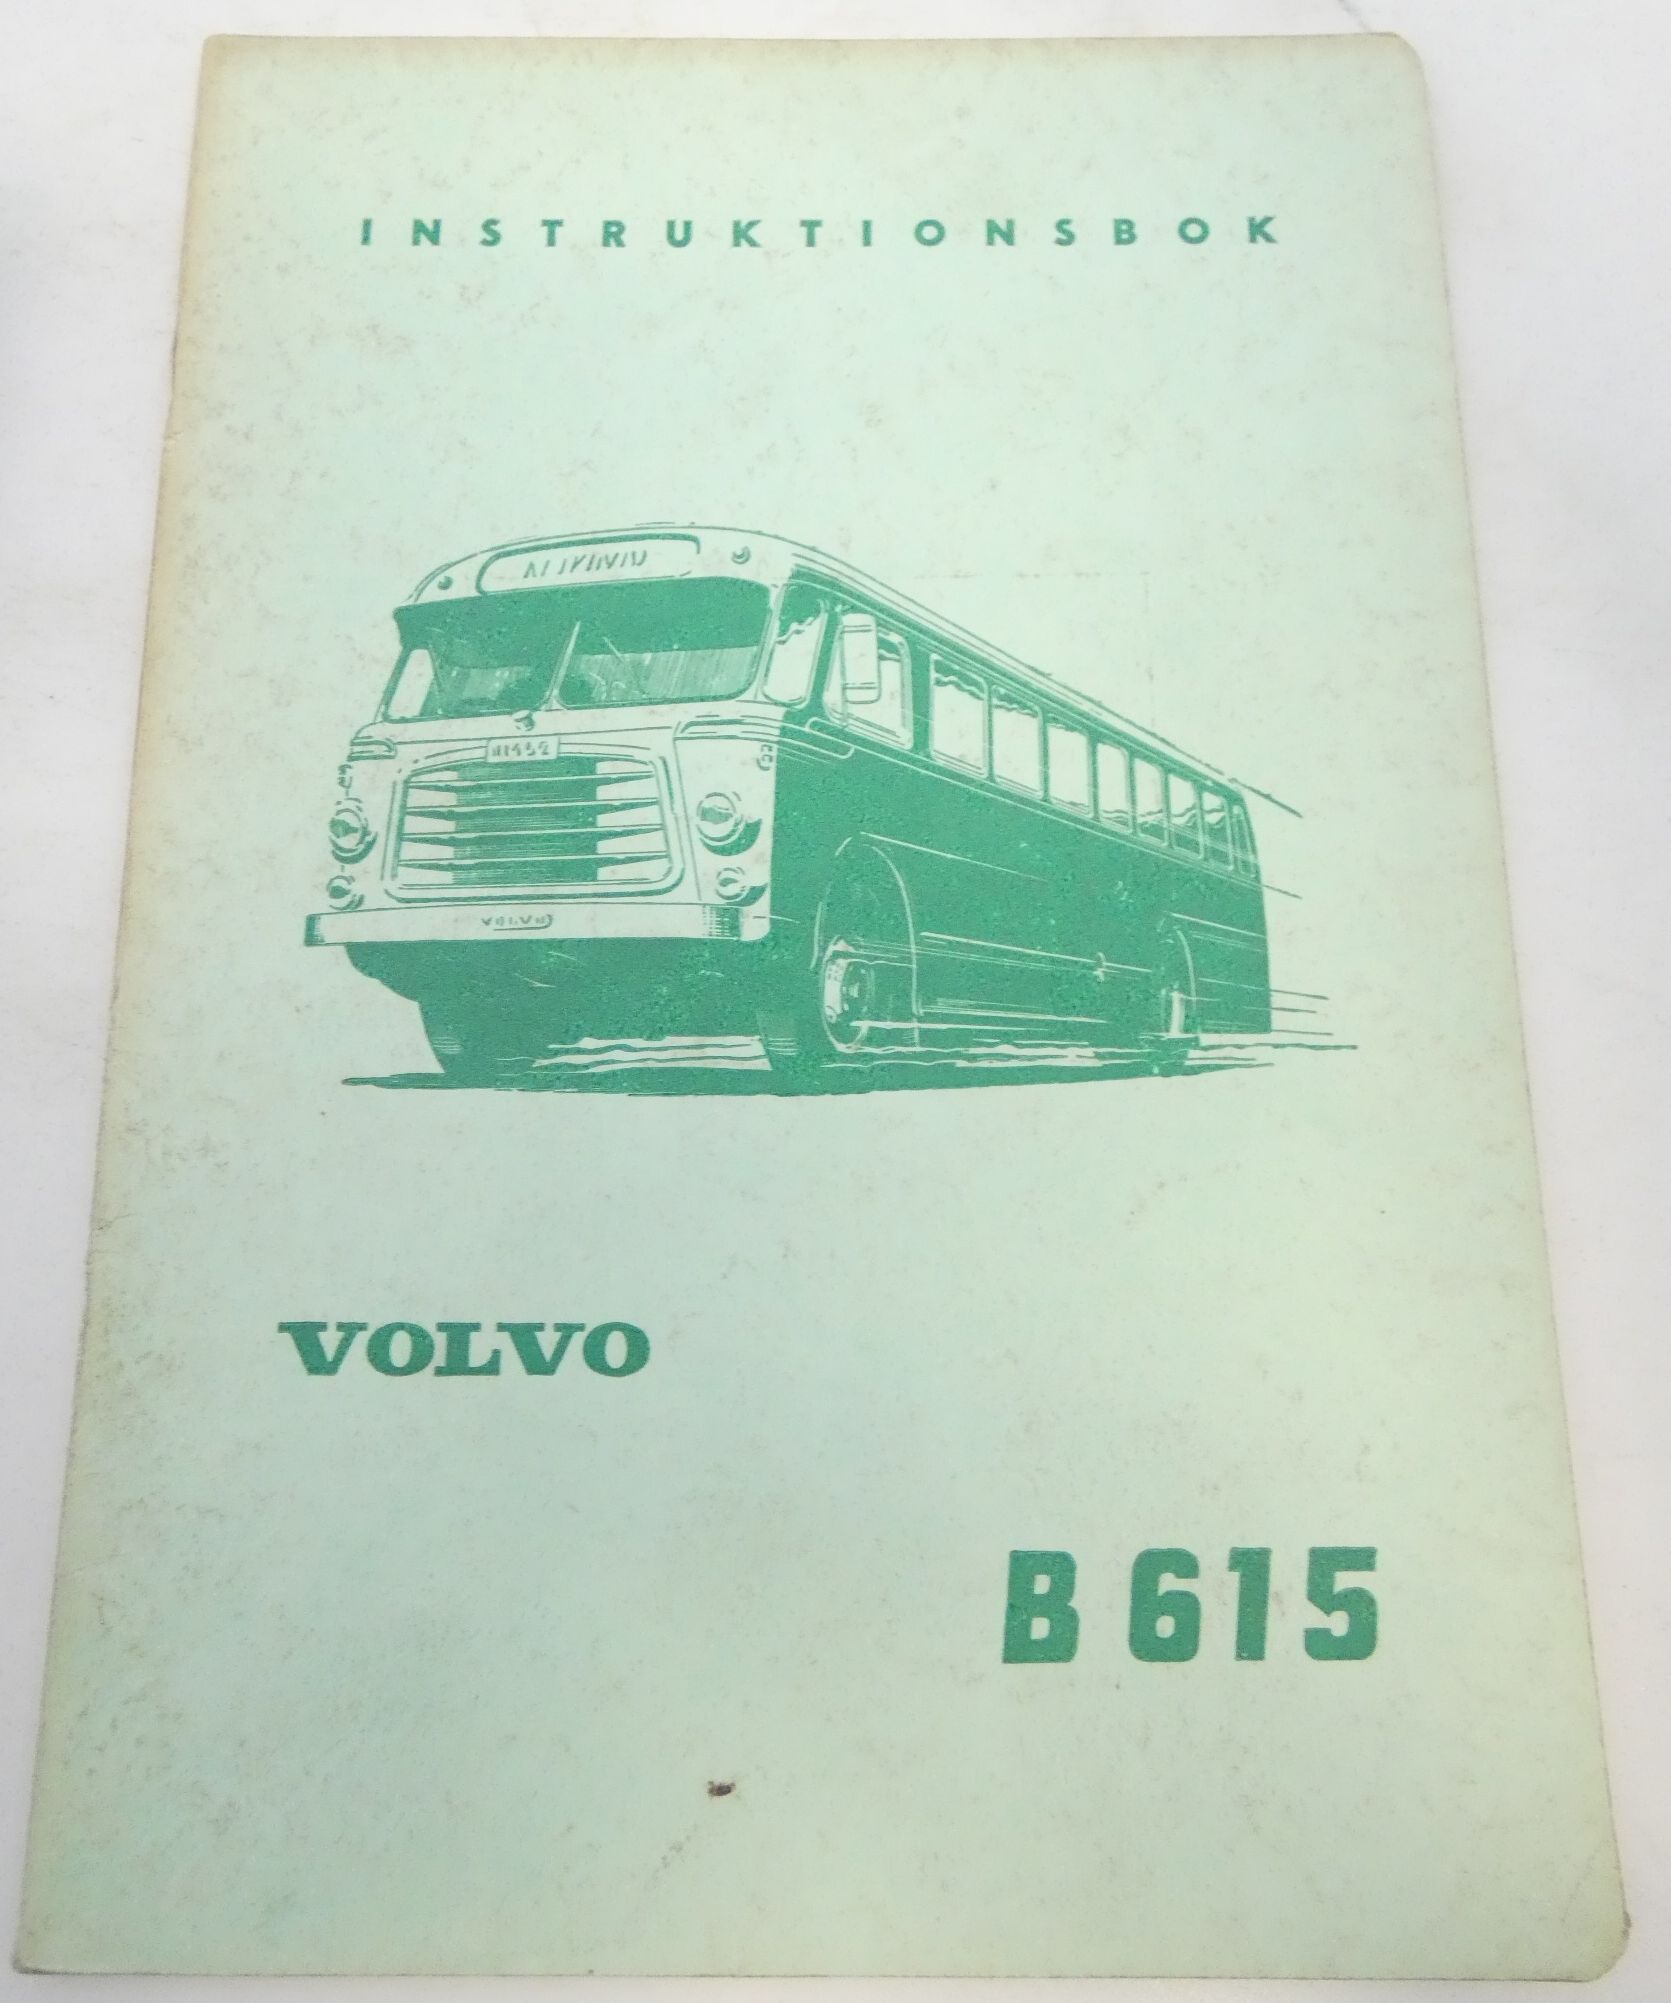 Volvo B615 instruktionsbok